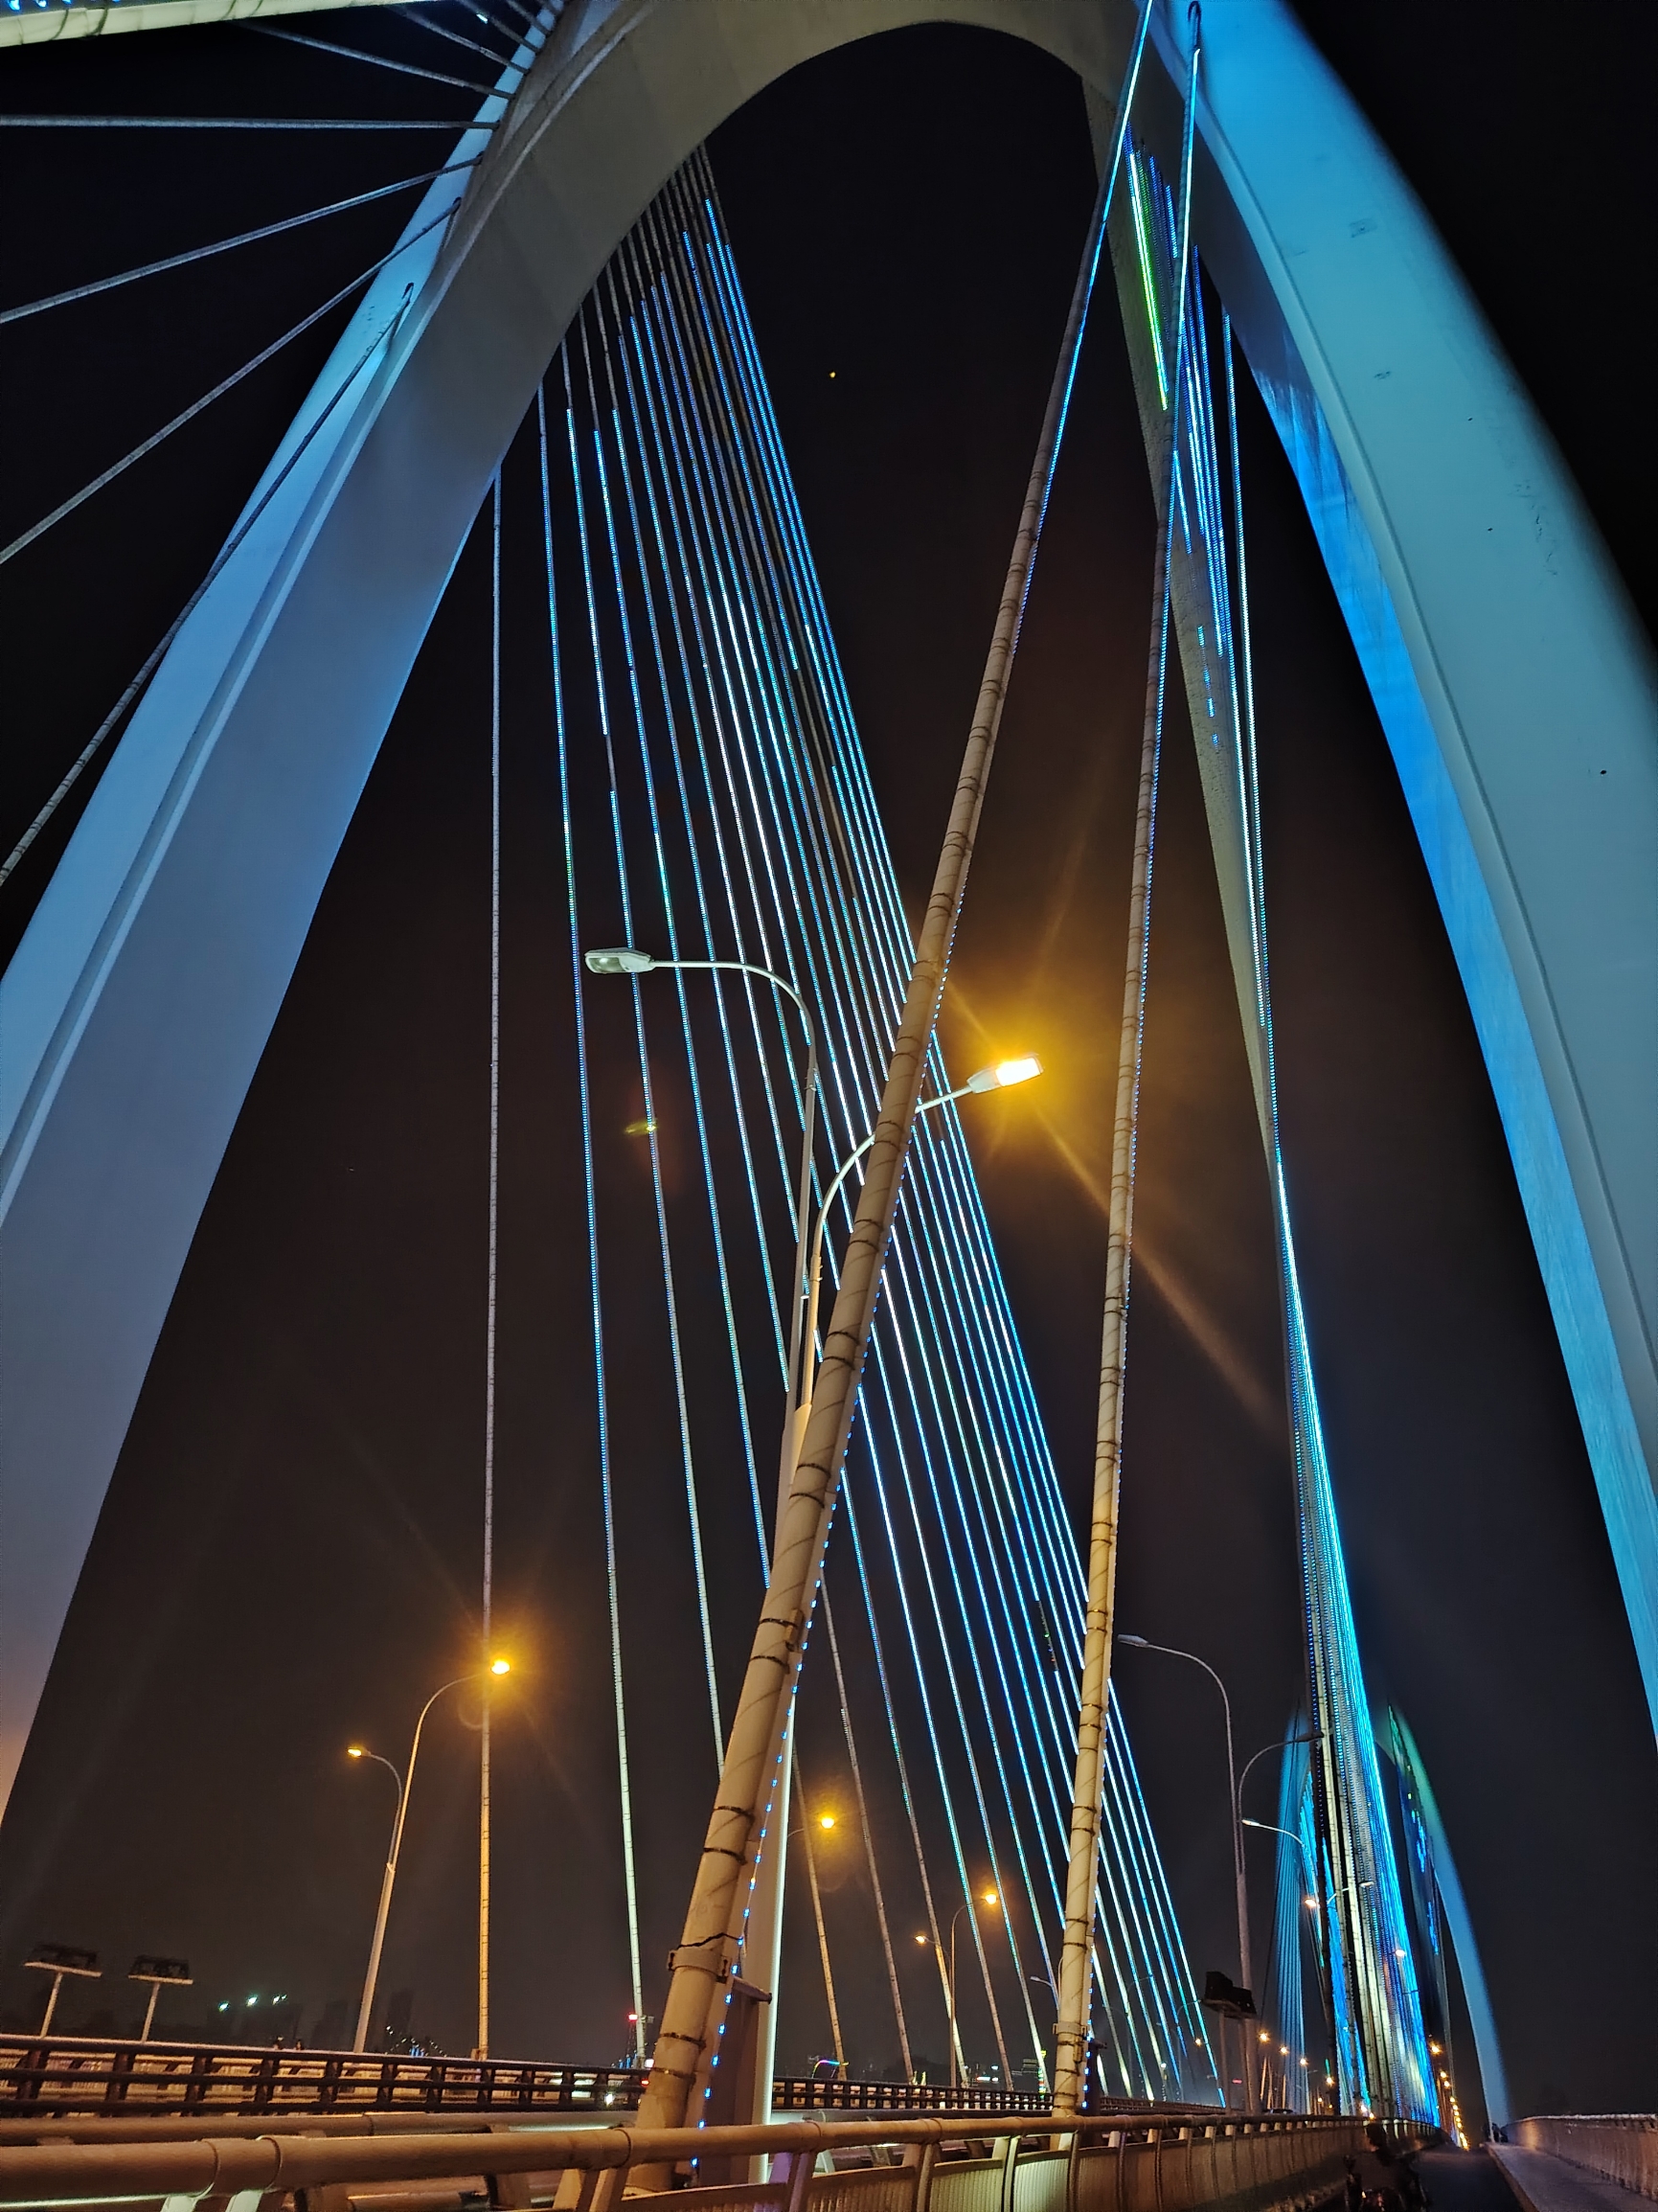 #春天玩点花的 晚上拍南宁青山大桥真是好看，线条流畅、硬朗，路过的朋友记得拍一下。#公路上的风景